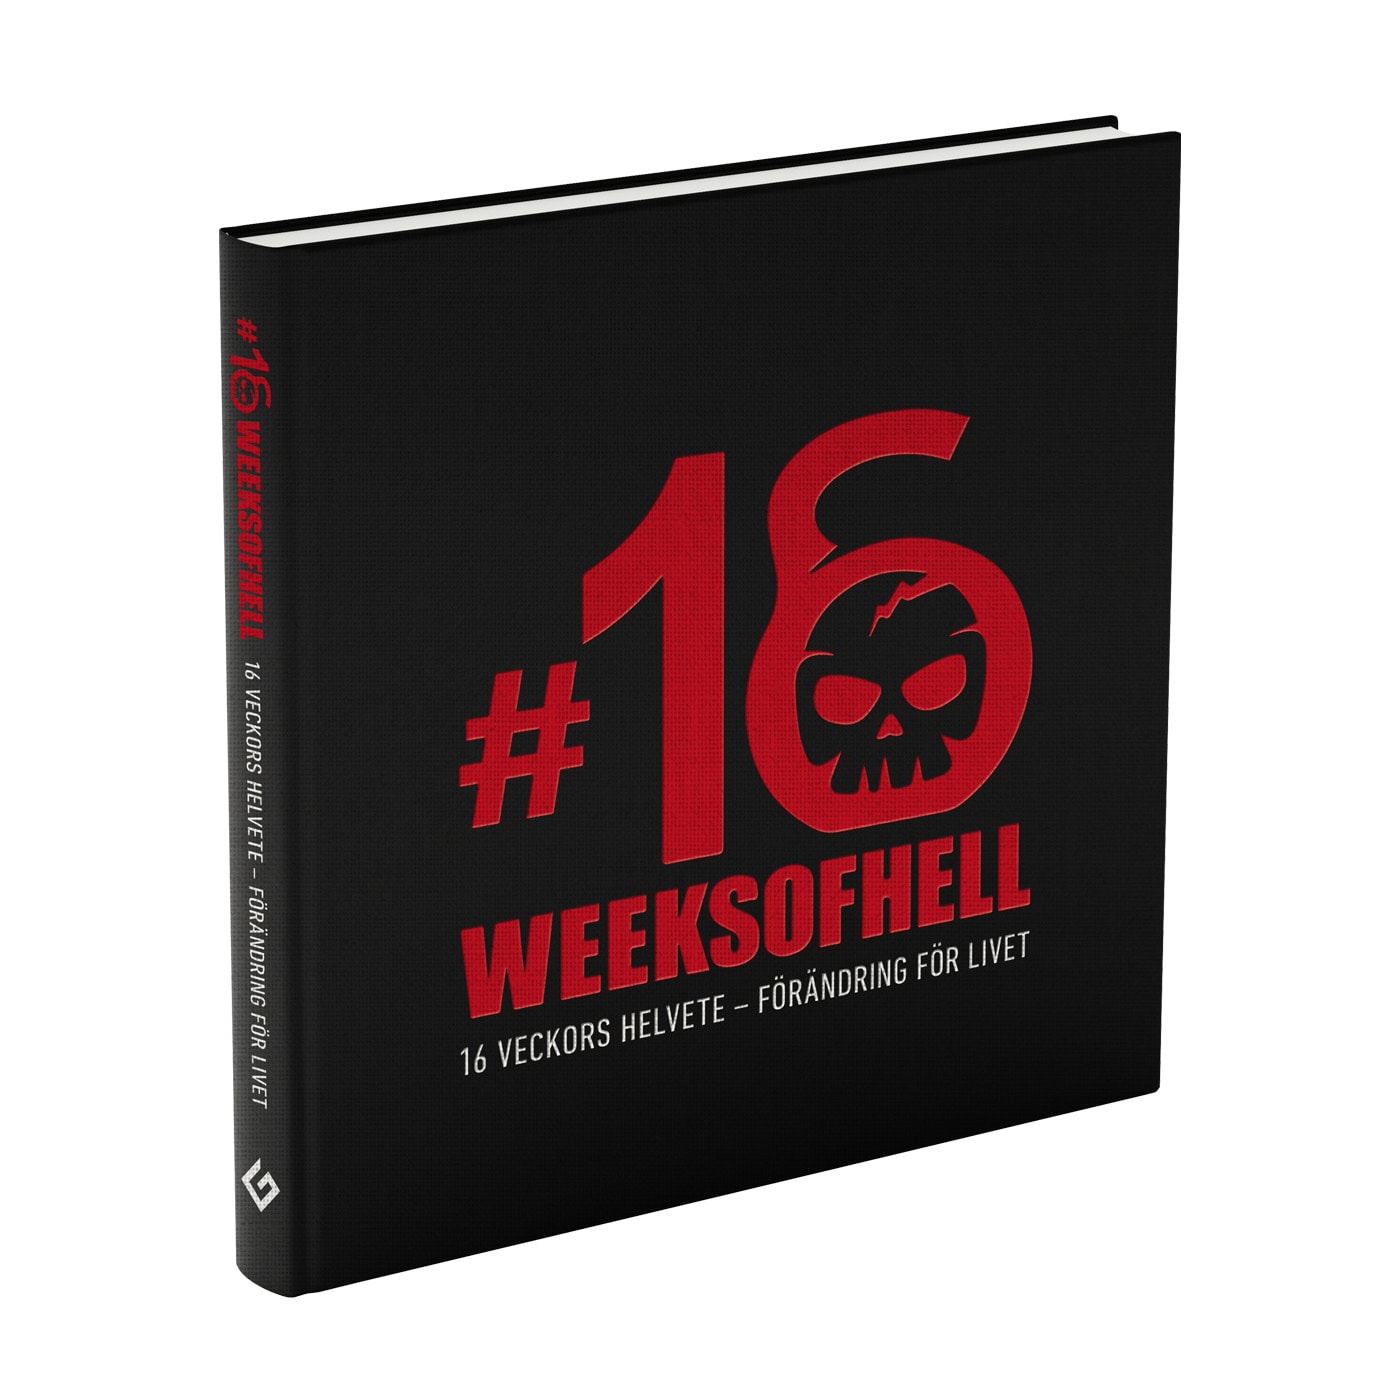 16 Weeks Of Hell boken